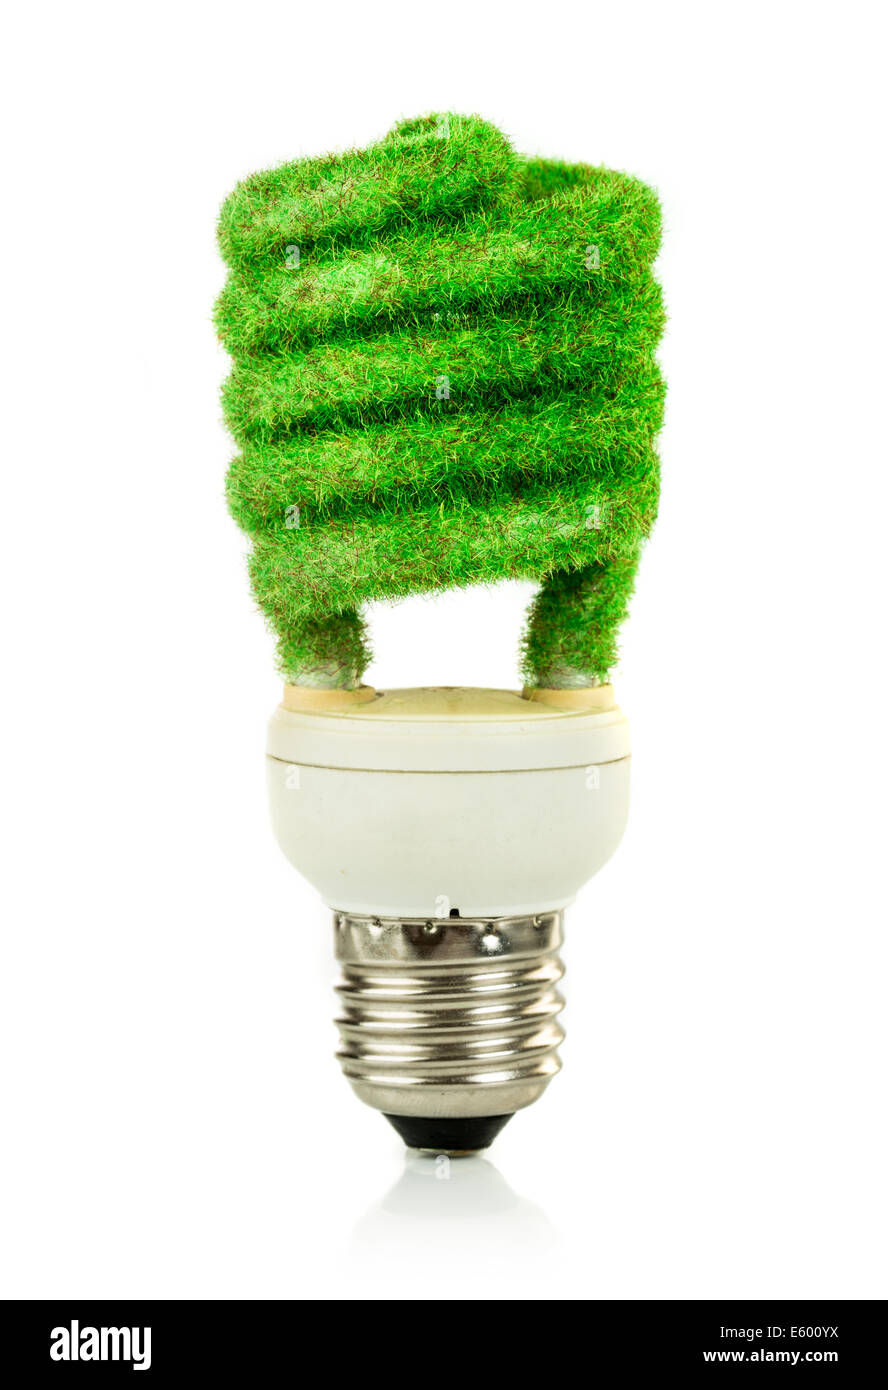 Eco light bulb isolated on white background Stock Photo